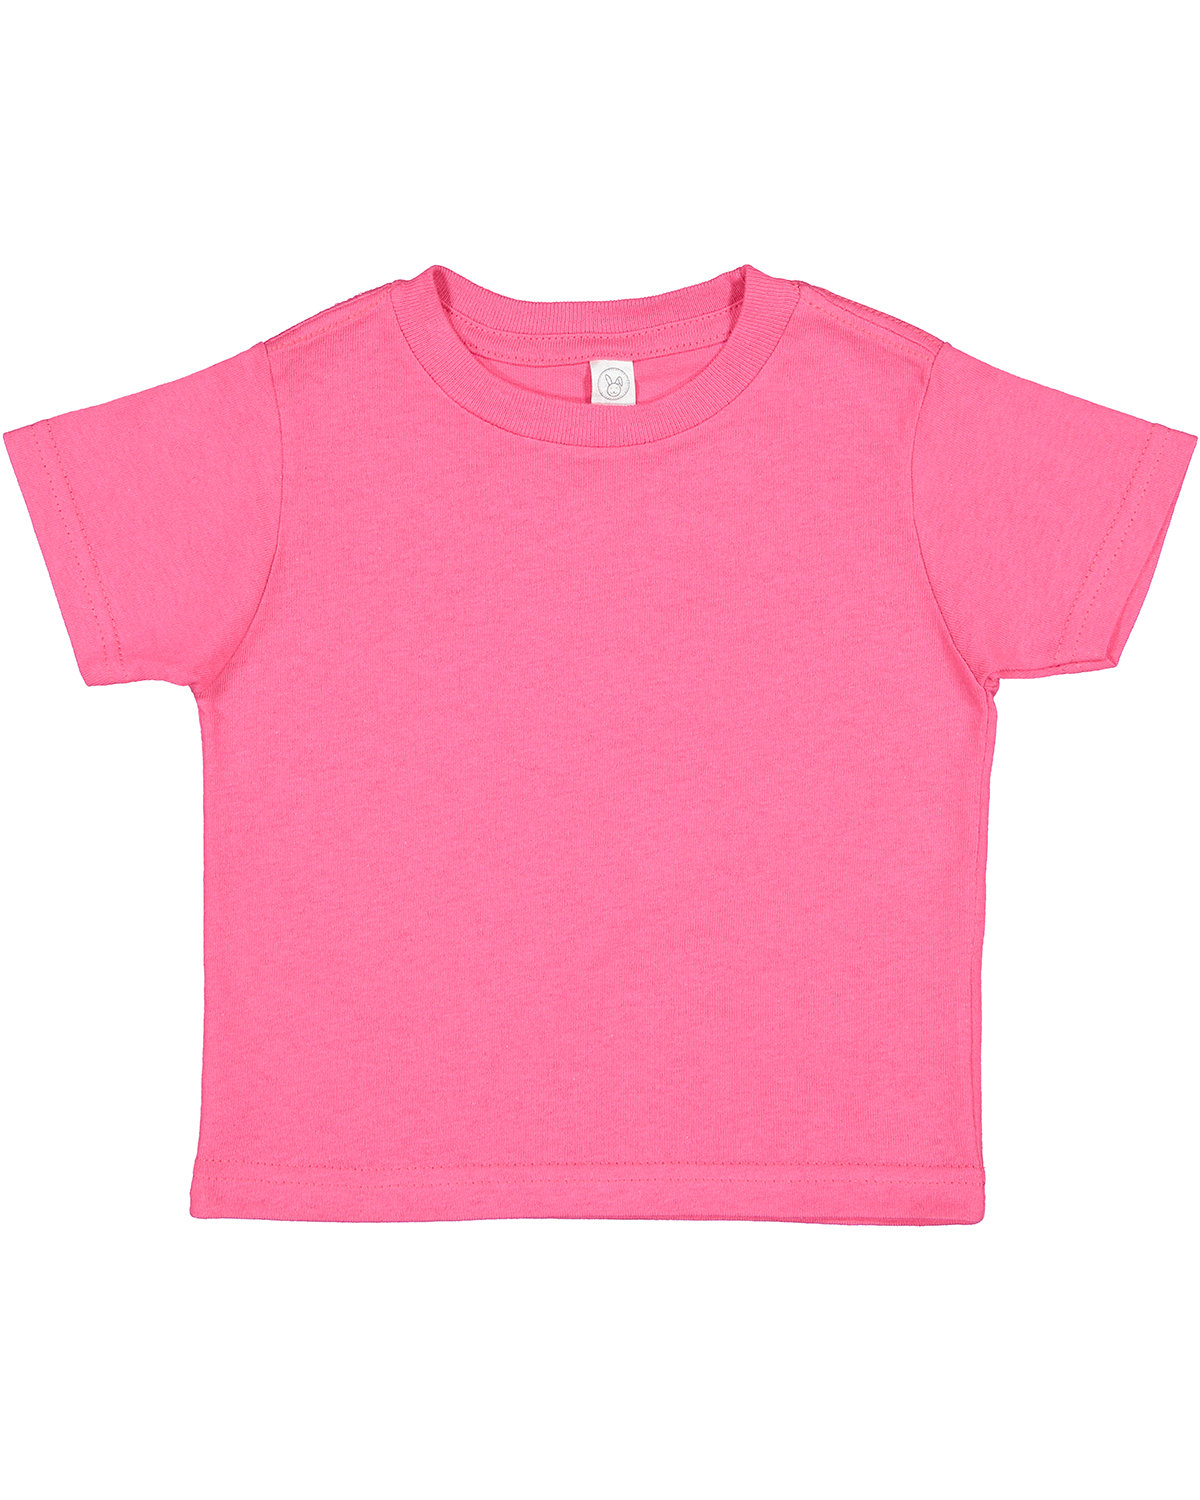 Rabbit Skins Toddler Cotton Jersey T-Shirt HOT PINK 